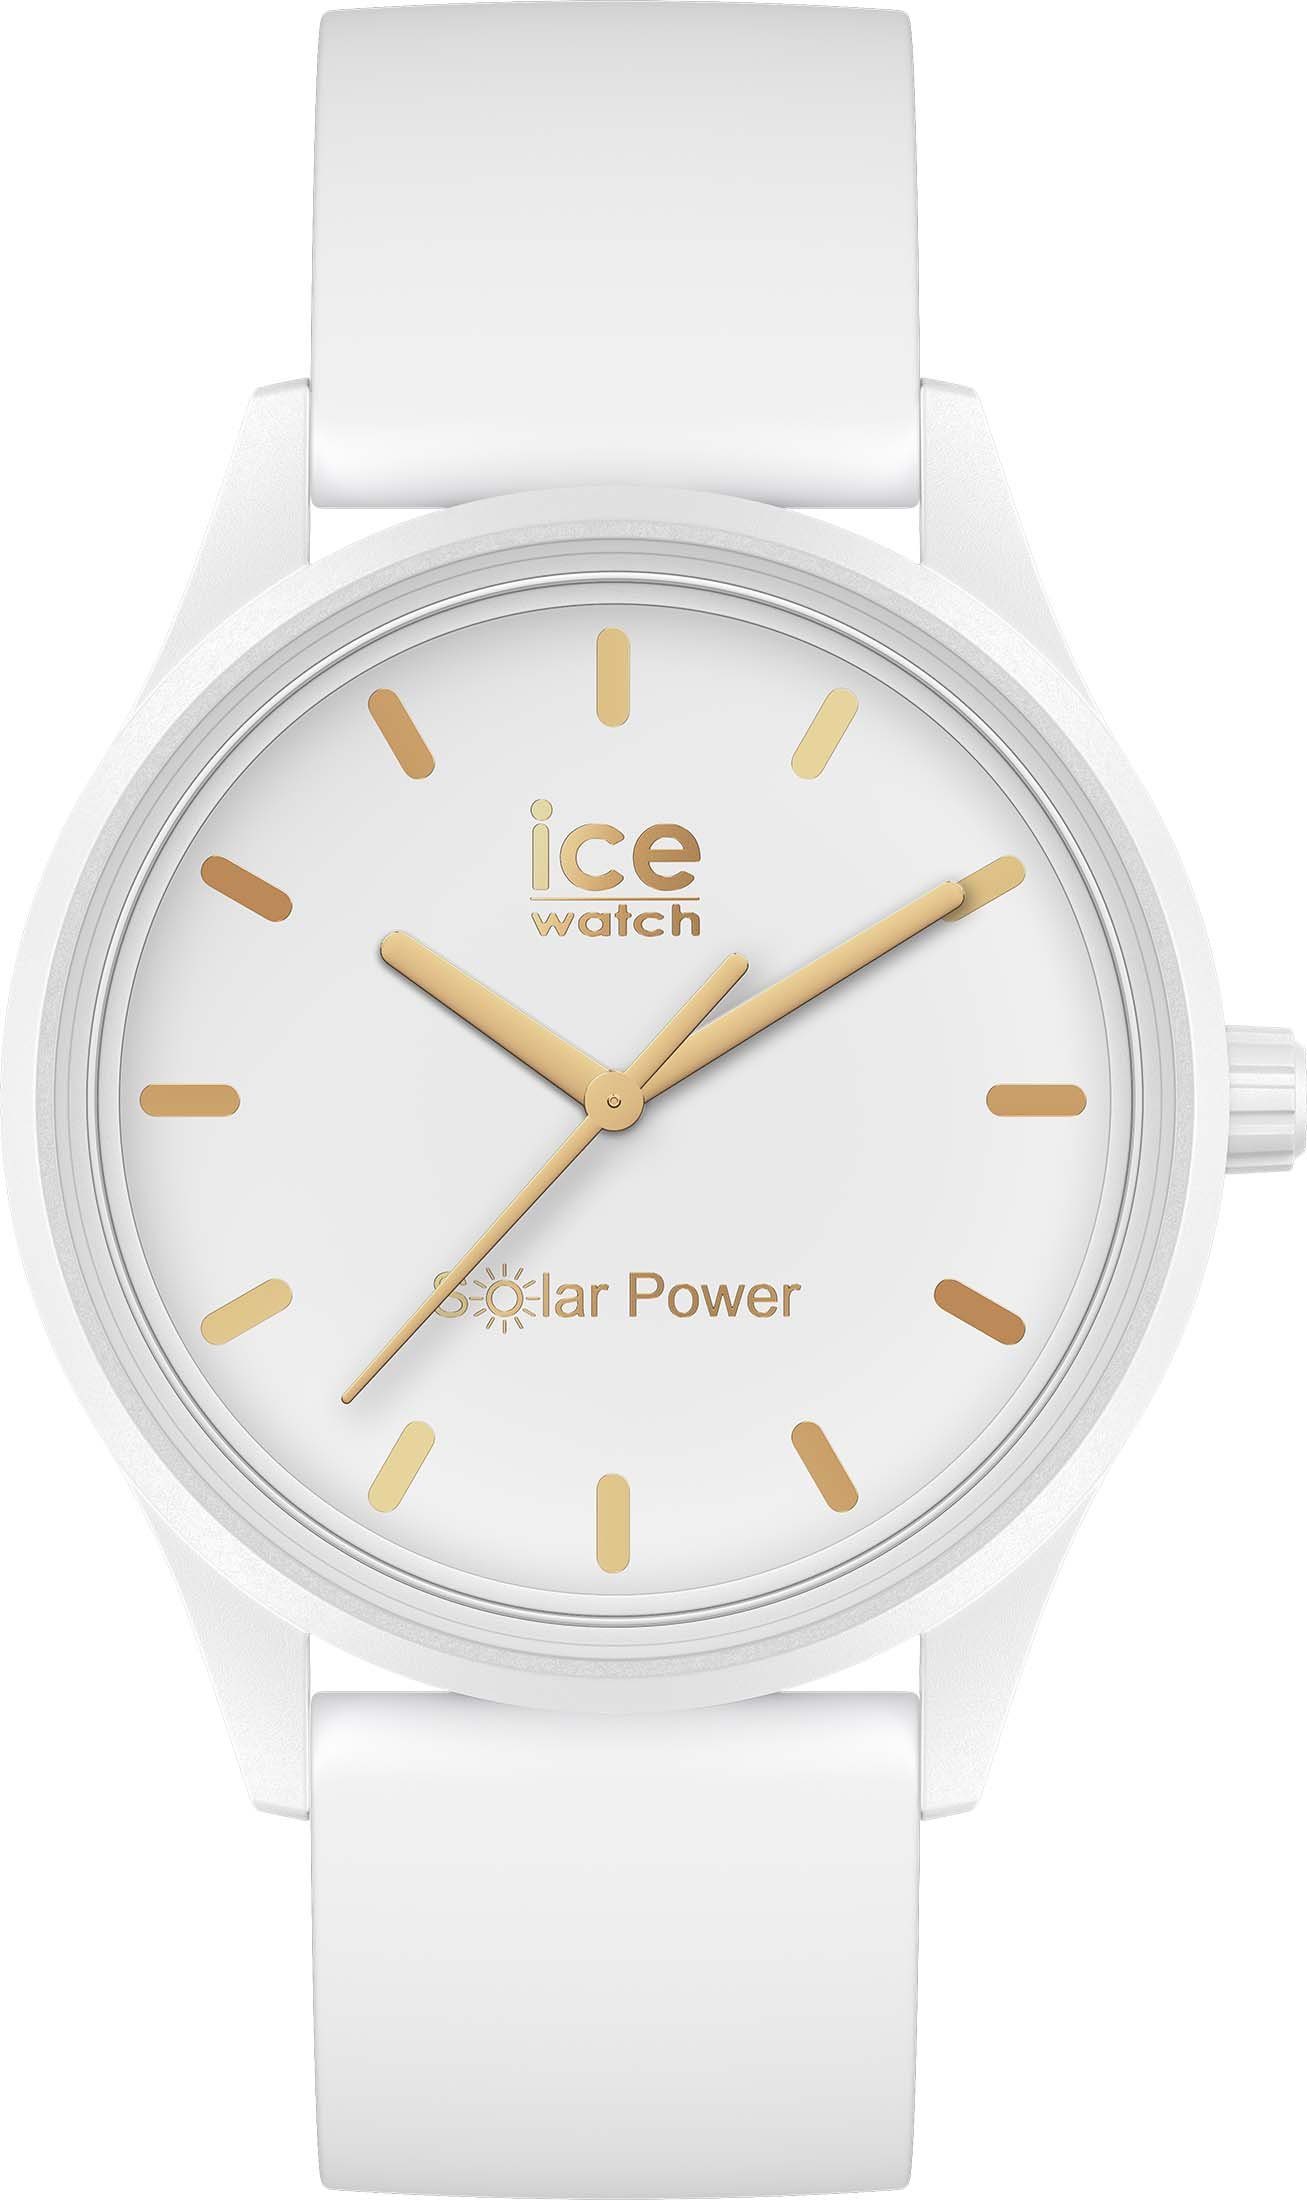 ice-watch Solaruhr ICE Solar power-White 020301 M, weiß gold